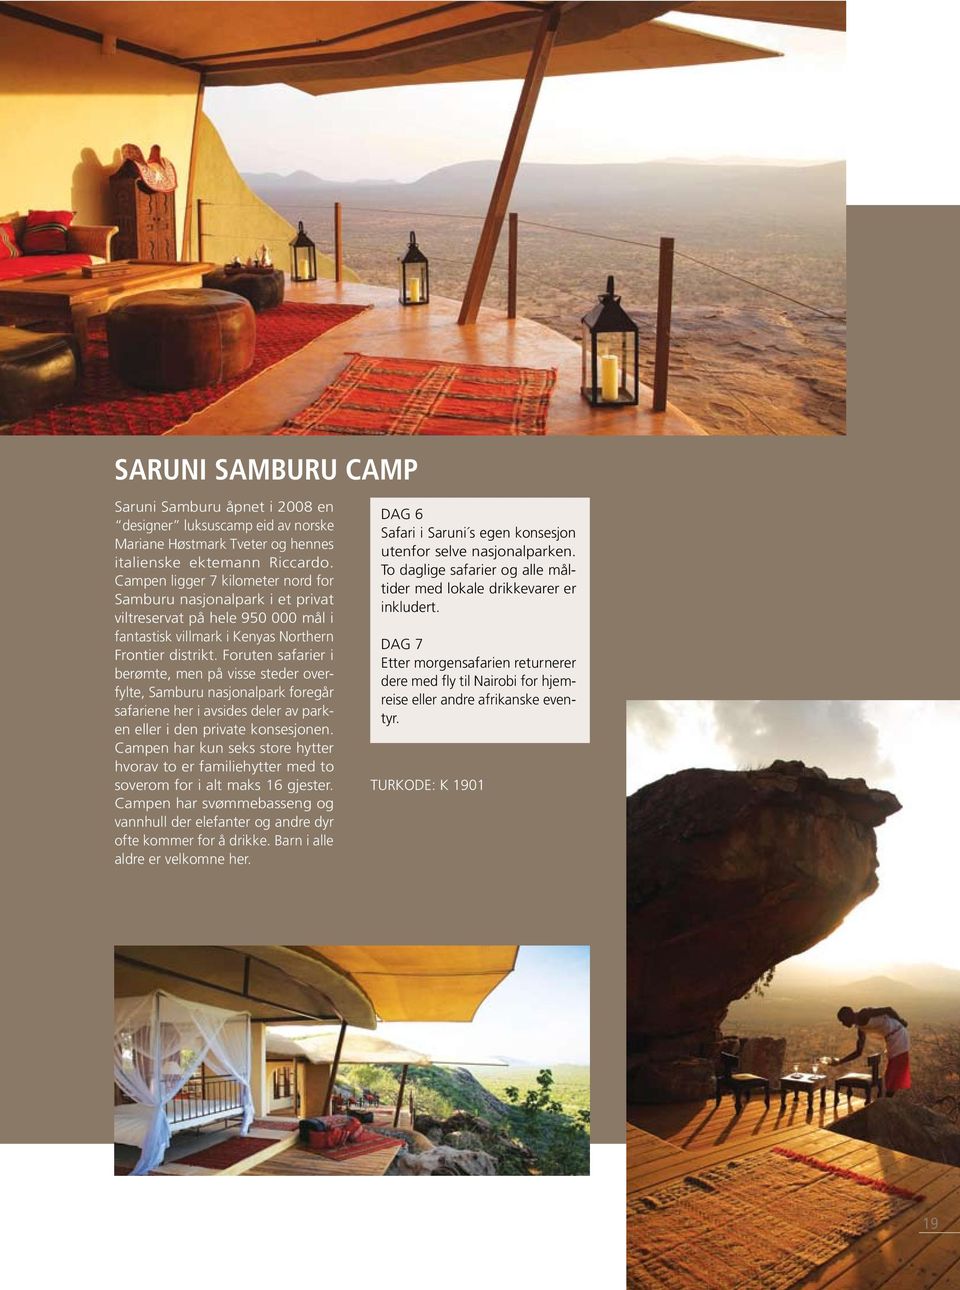 Foruten safarier i berømte, men på visse steder overfylte, Samburu nasjonalpark foregår safariene her i avsides deler av parken eller i den private konsesjonen.